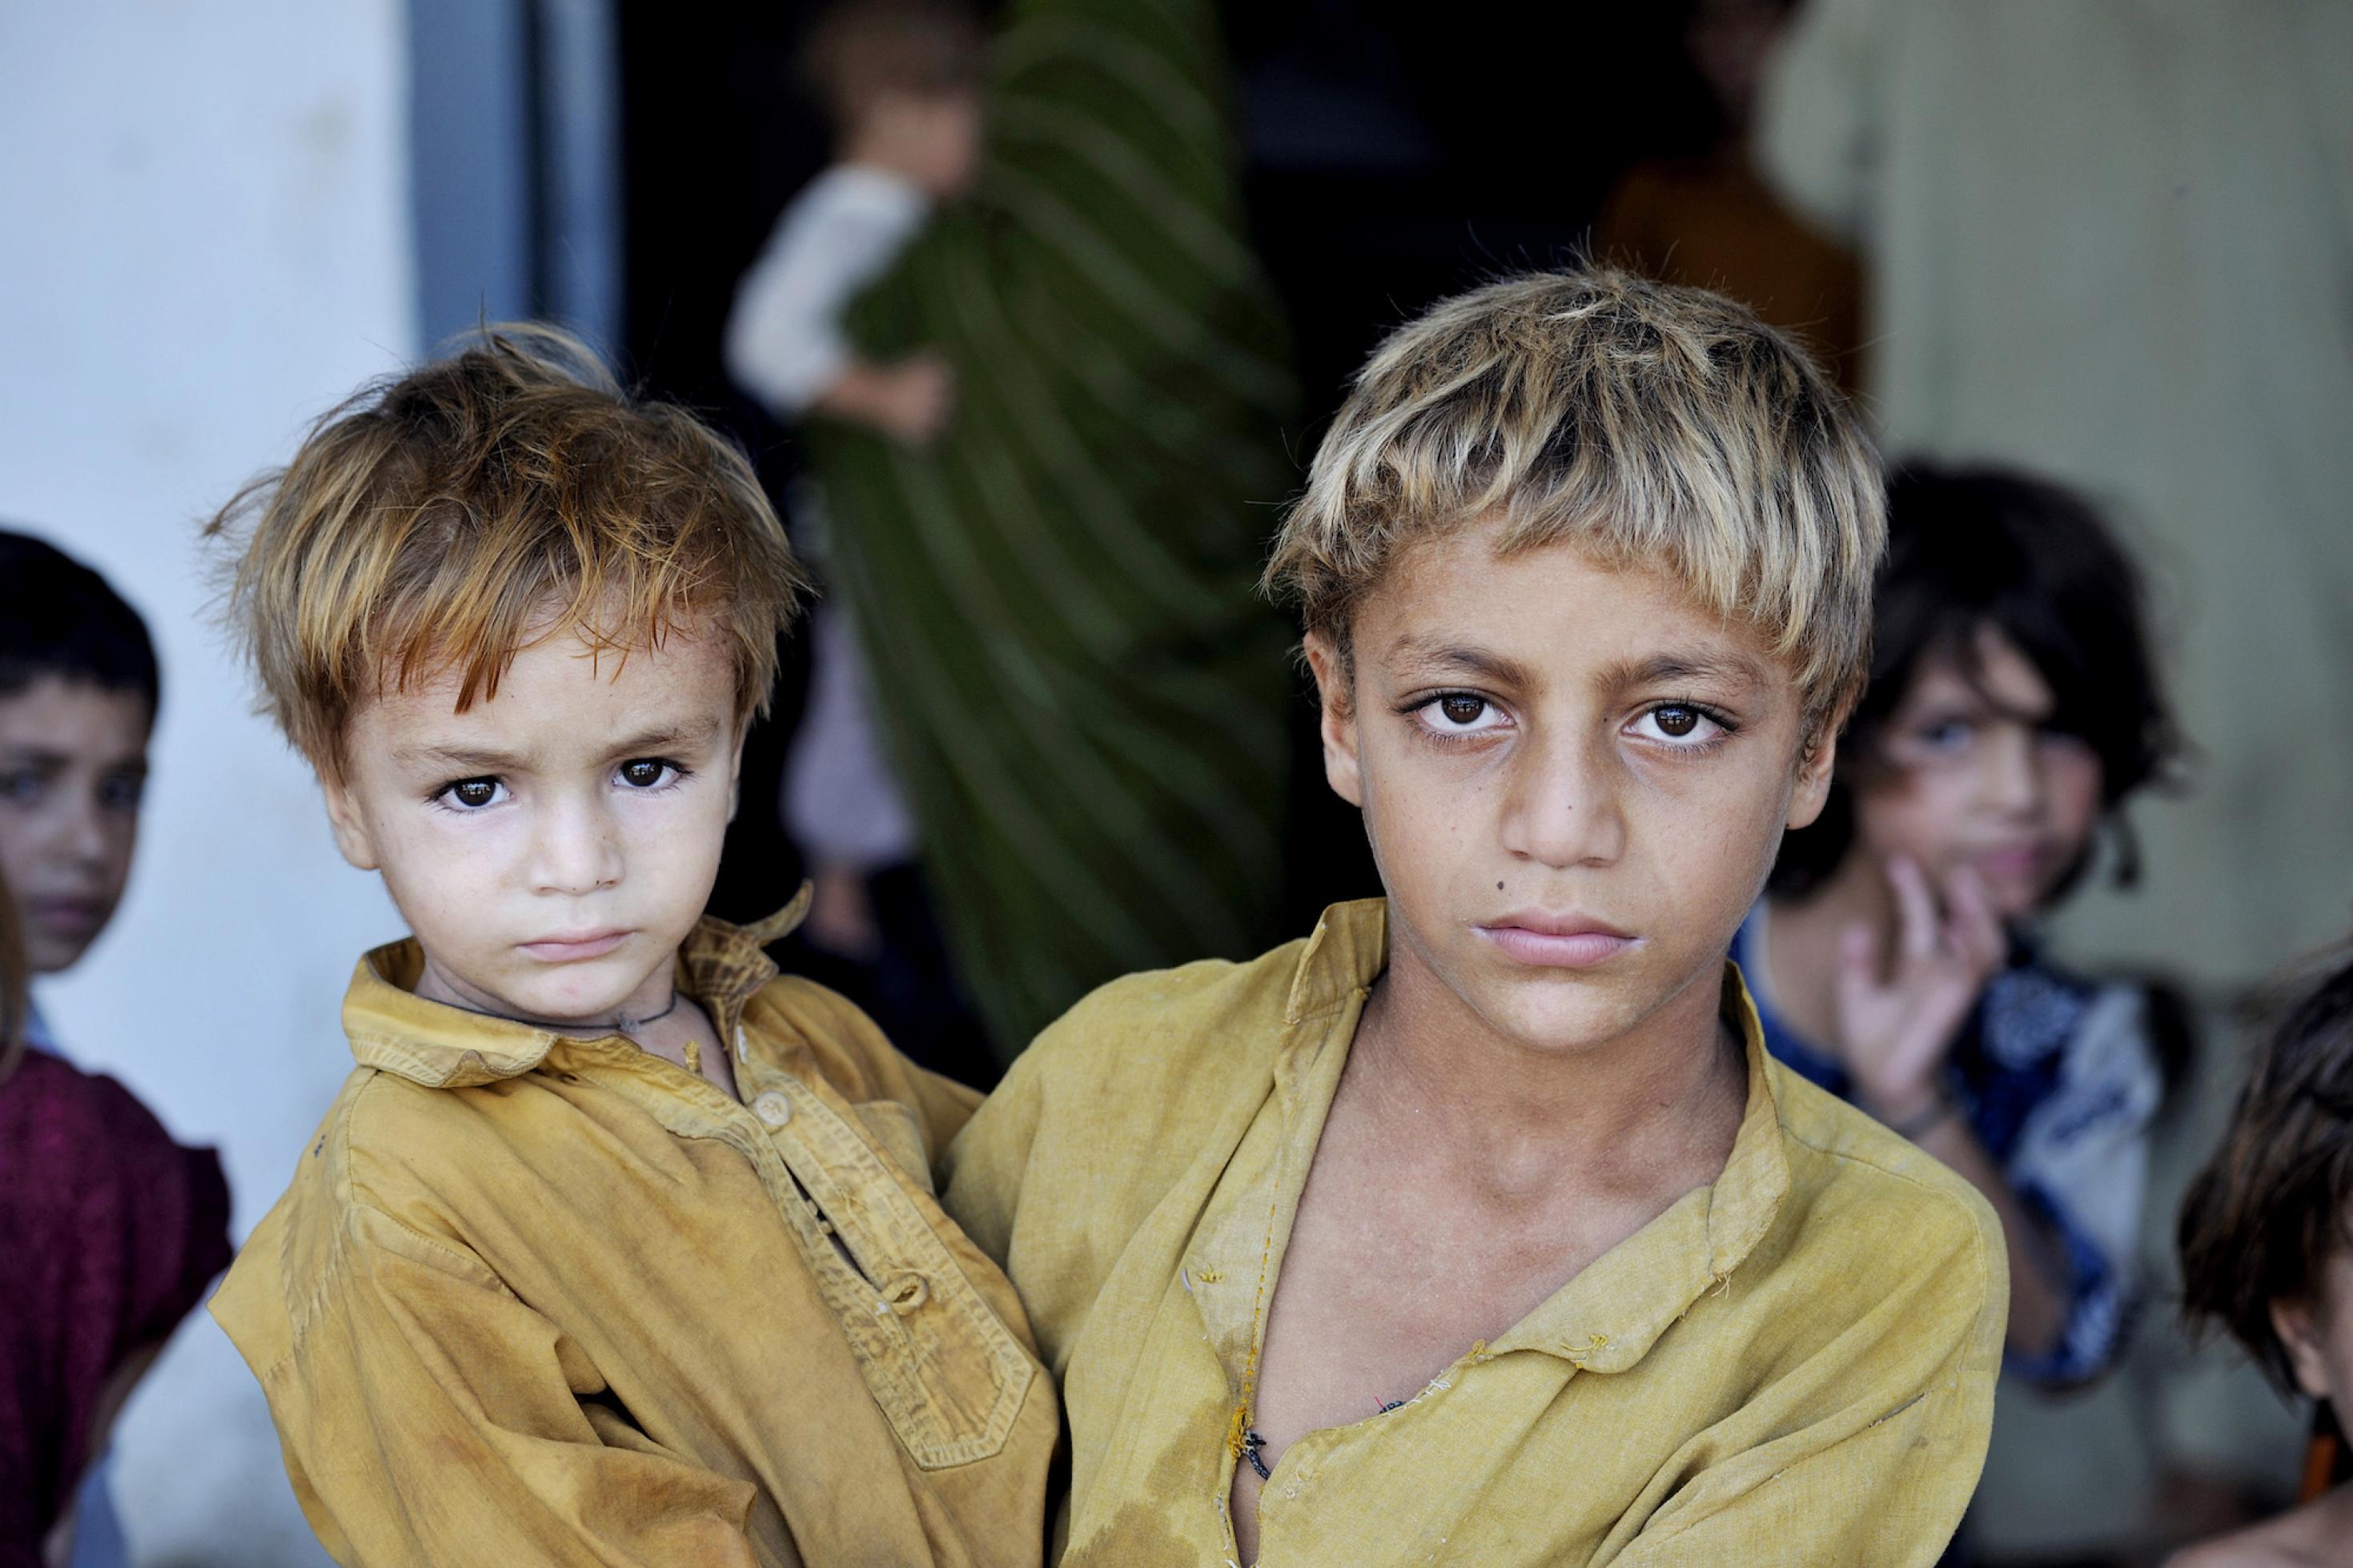 Ein älterer Junger hält seinen jüngeren Bruder auf dem Arm, beide schauen ernst in die Kamera. Dieses Bruderpaar fand damals – wie Tausende andere – Zuflucht in einer Schule des Charsadra-Distrikts in der nordwestlichen Grenzprovinz Khyber Pakhtunkhwa.